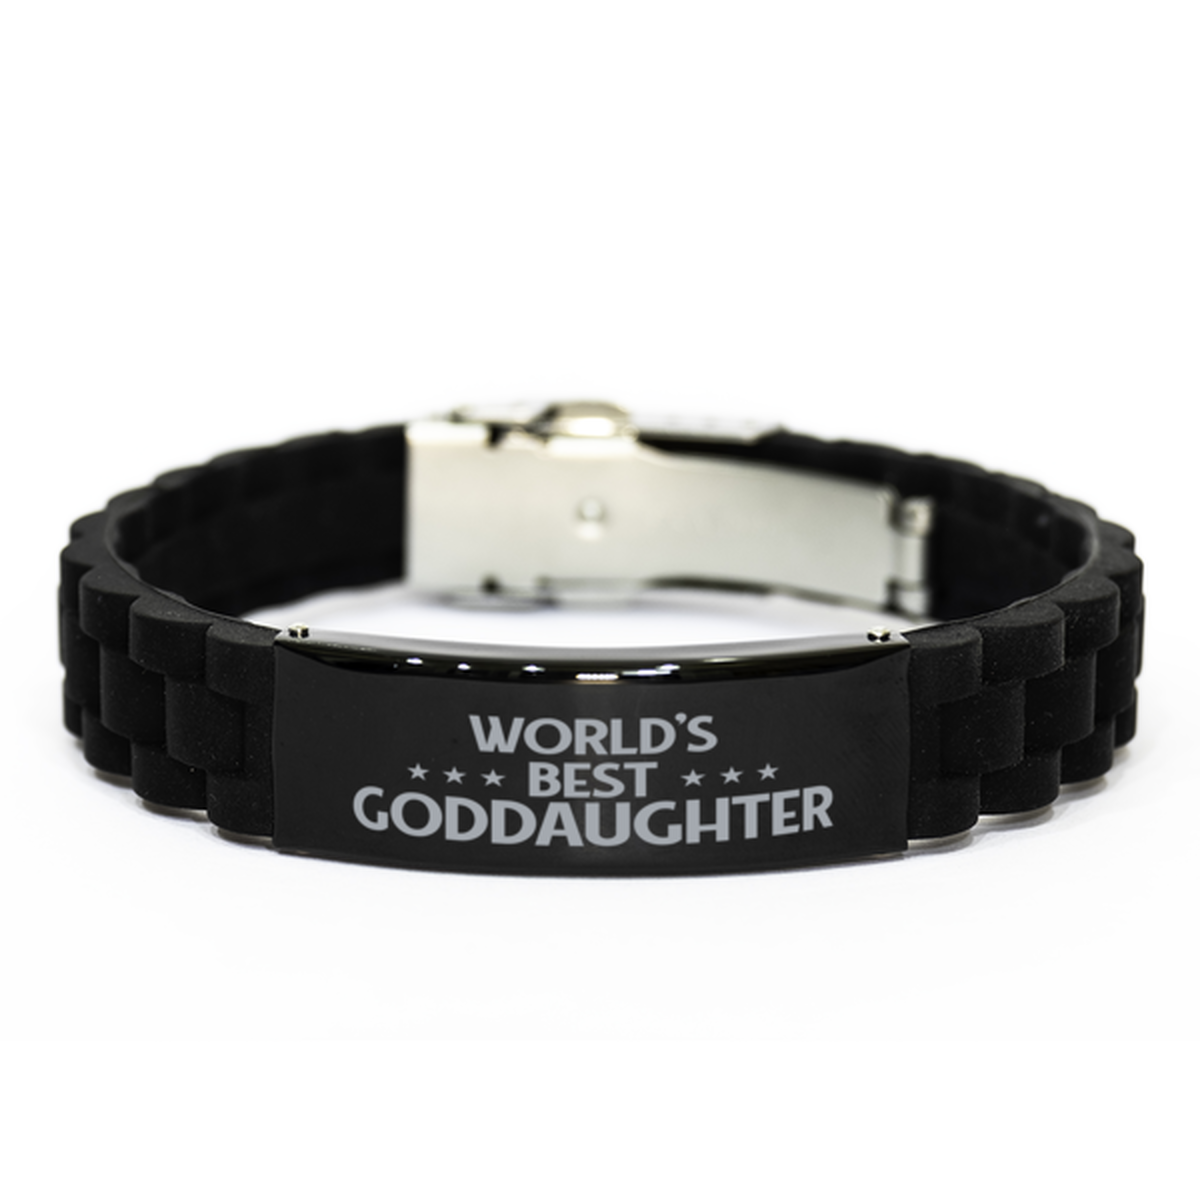 World's Best Goddaughter Gifts, Funny Black Engraved Bracelet For Goddaughter, Family Gifts For Women